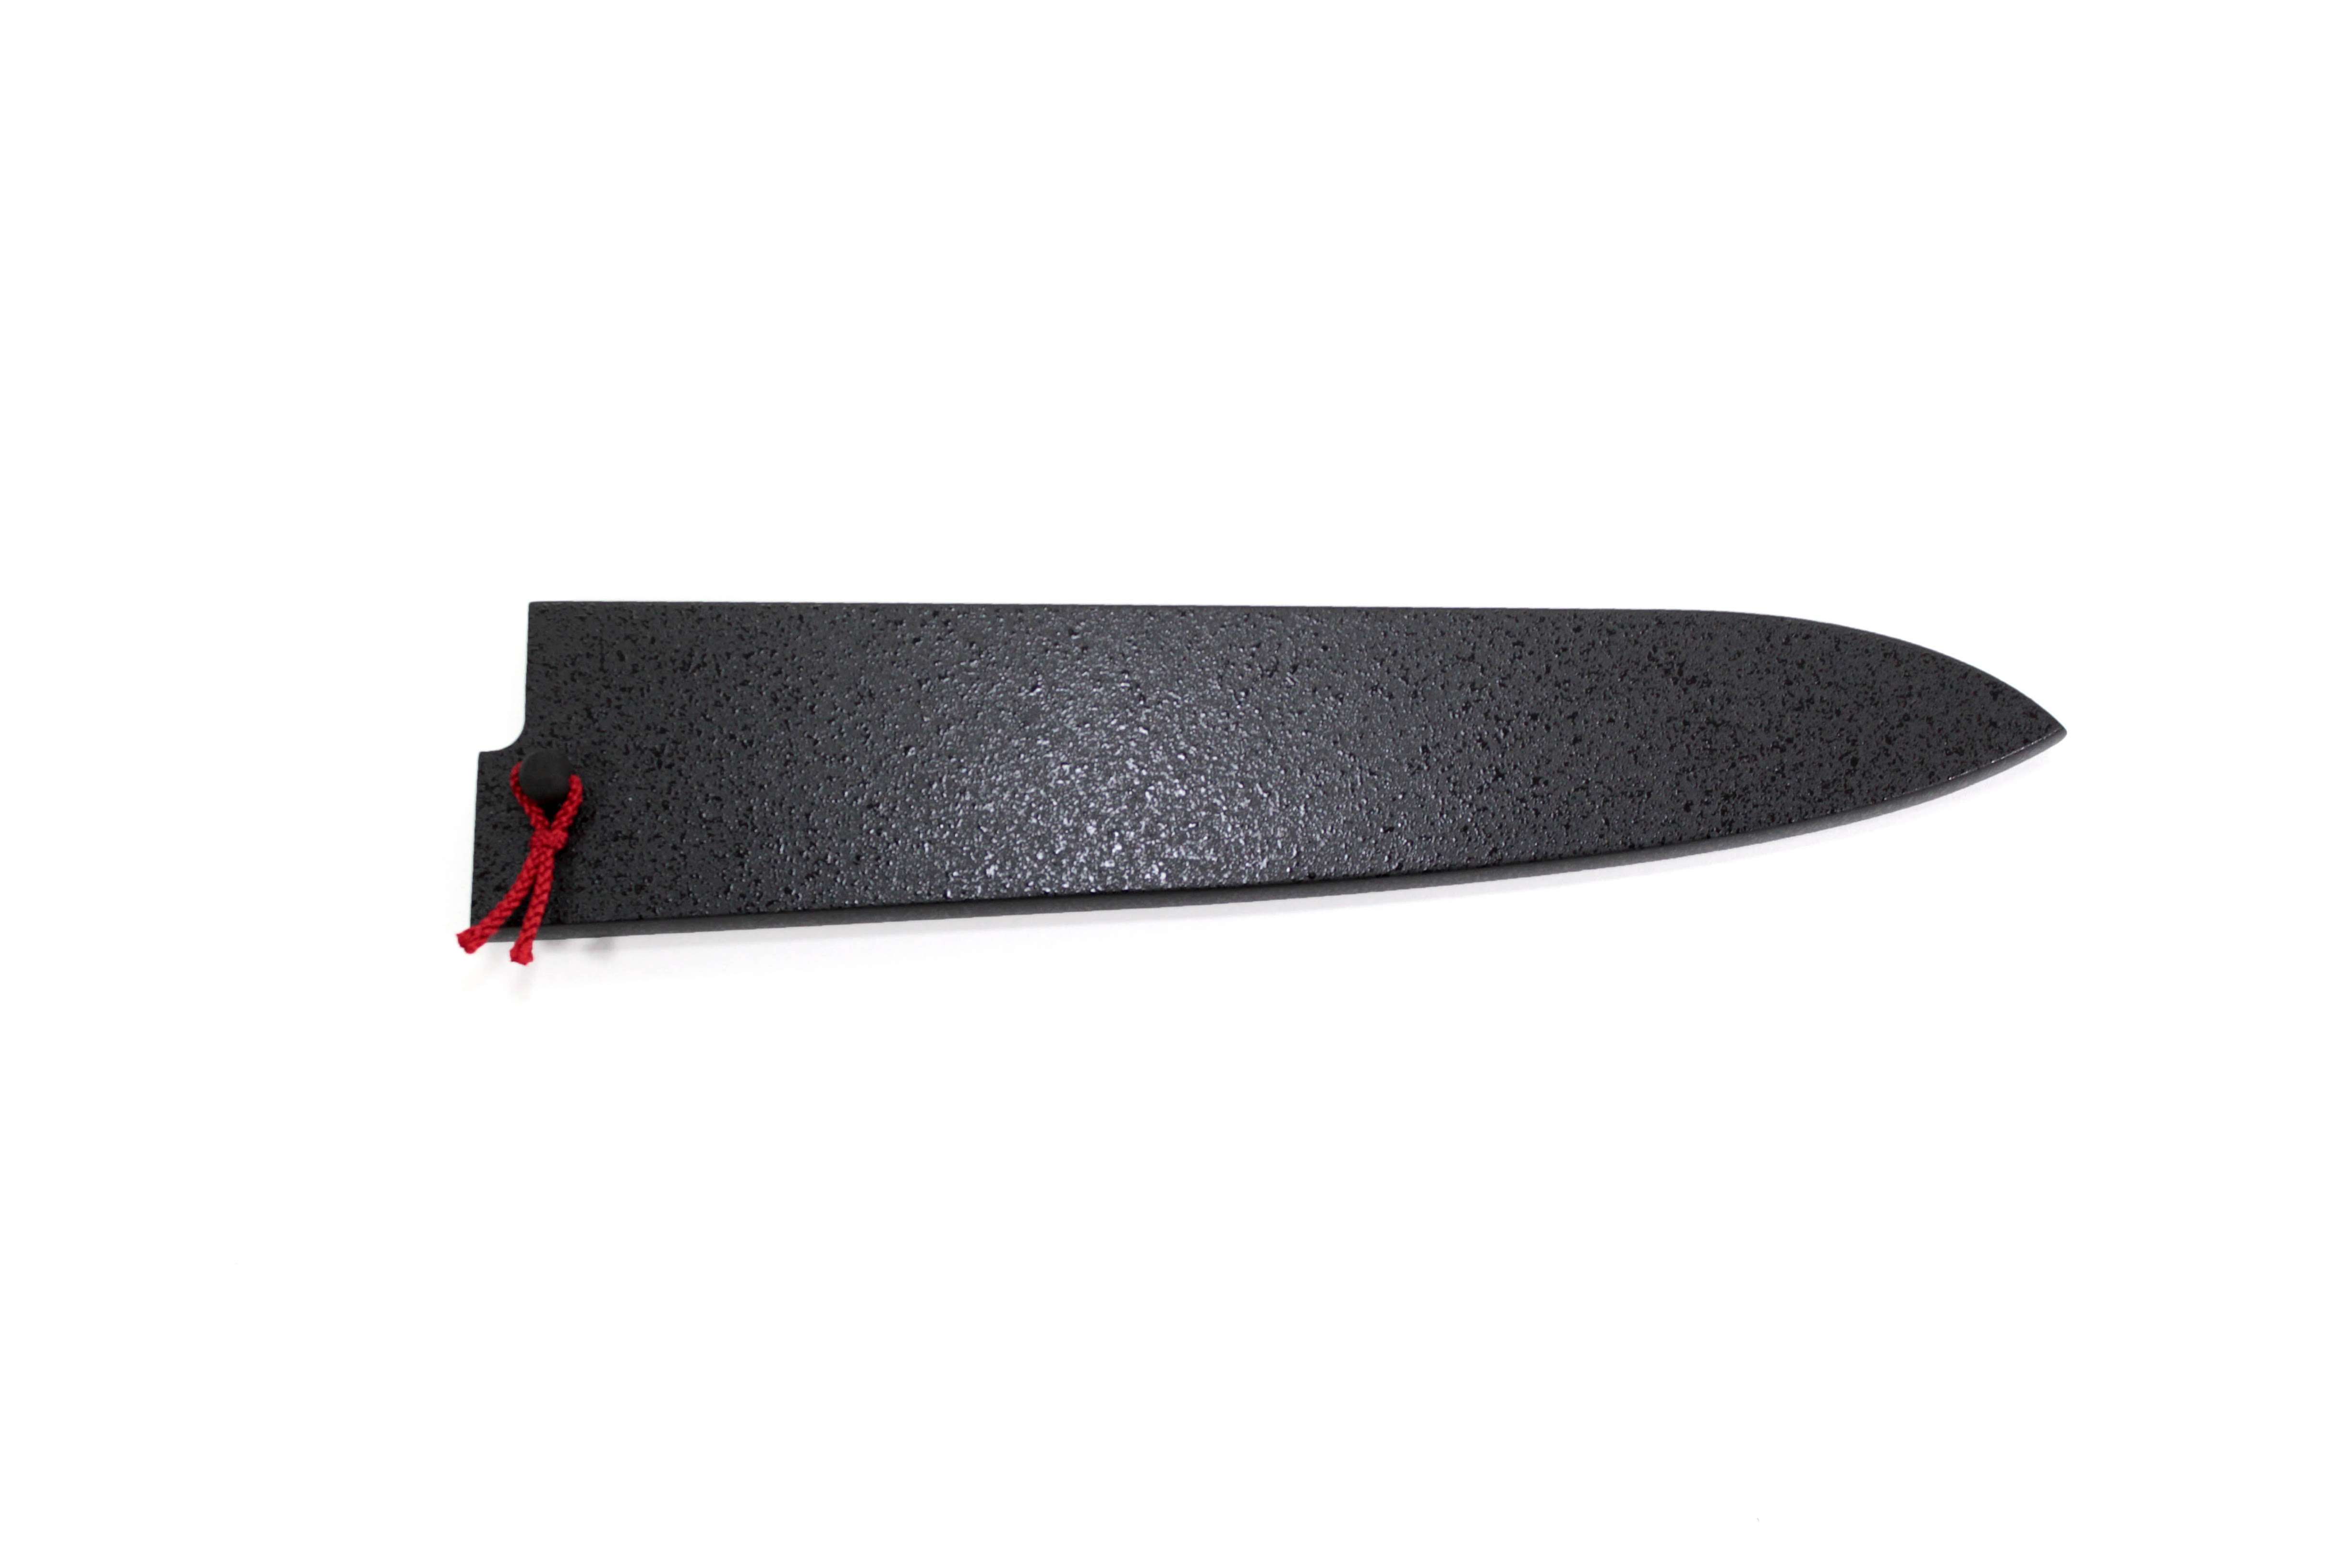 Etui scandinave avec dangler pour couteaux de 7 à 10 cm de lame